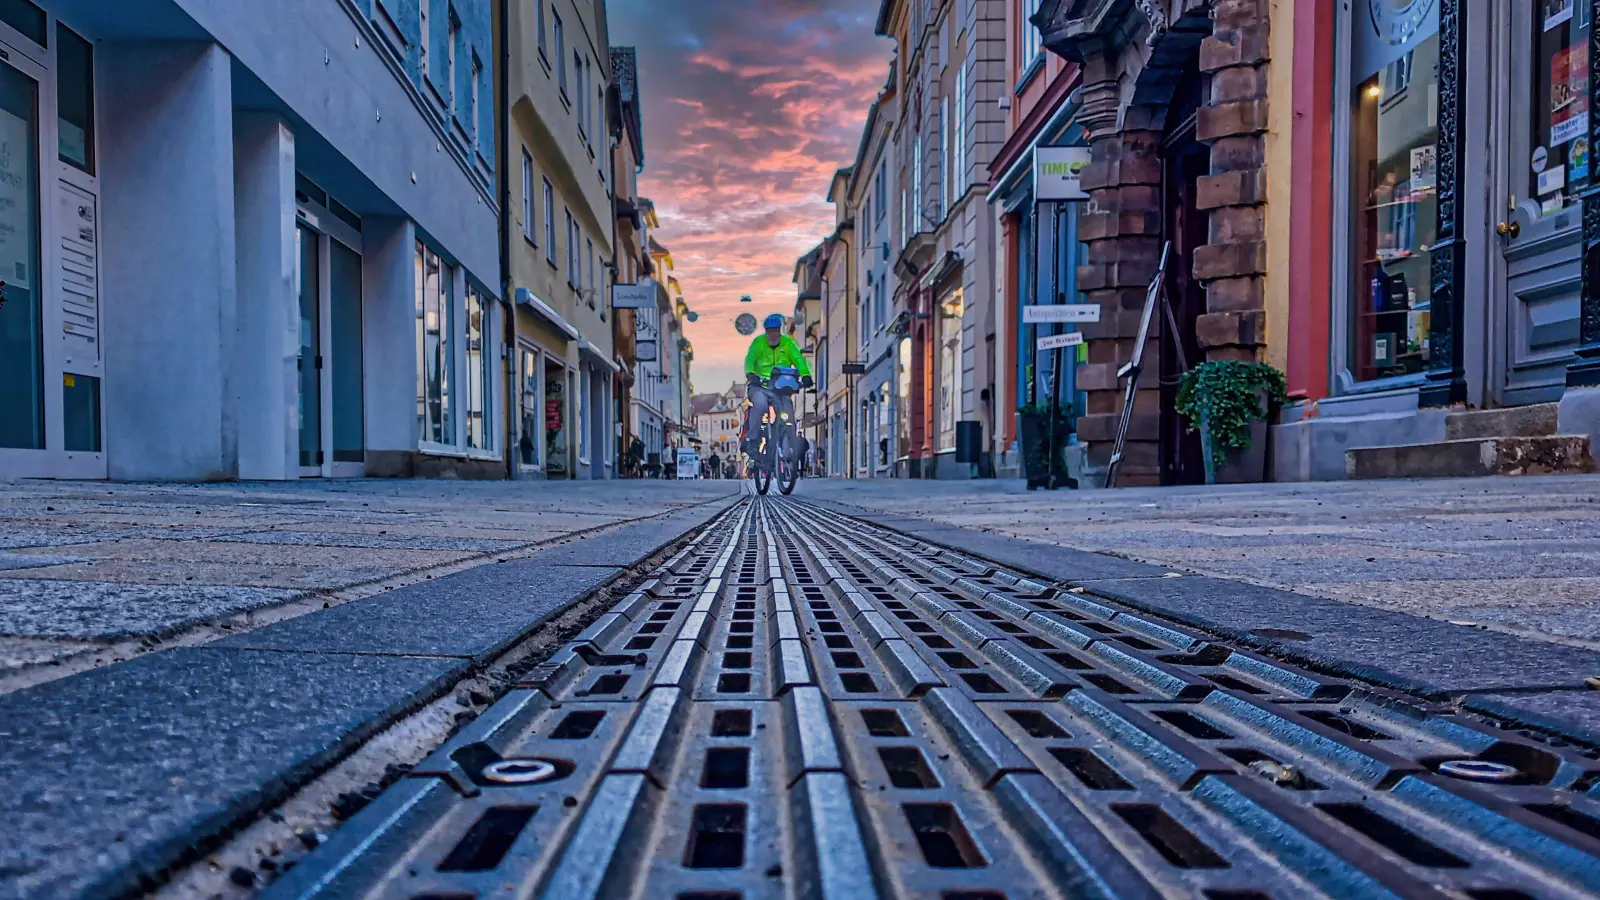 Nach mehrjährigen Arbeiten ist der Straßenbelang in der Neustadt für Fußgänger leichter zu nutzen. Auch Radfahren ist erlaubt. Doch viele Geschäfte stehen leer. (Foto: Walter Röber)